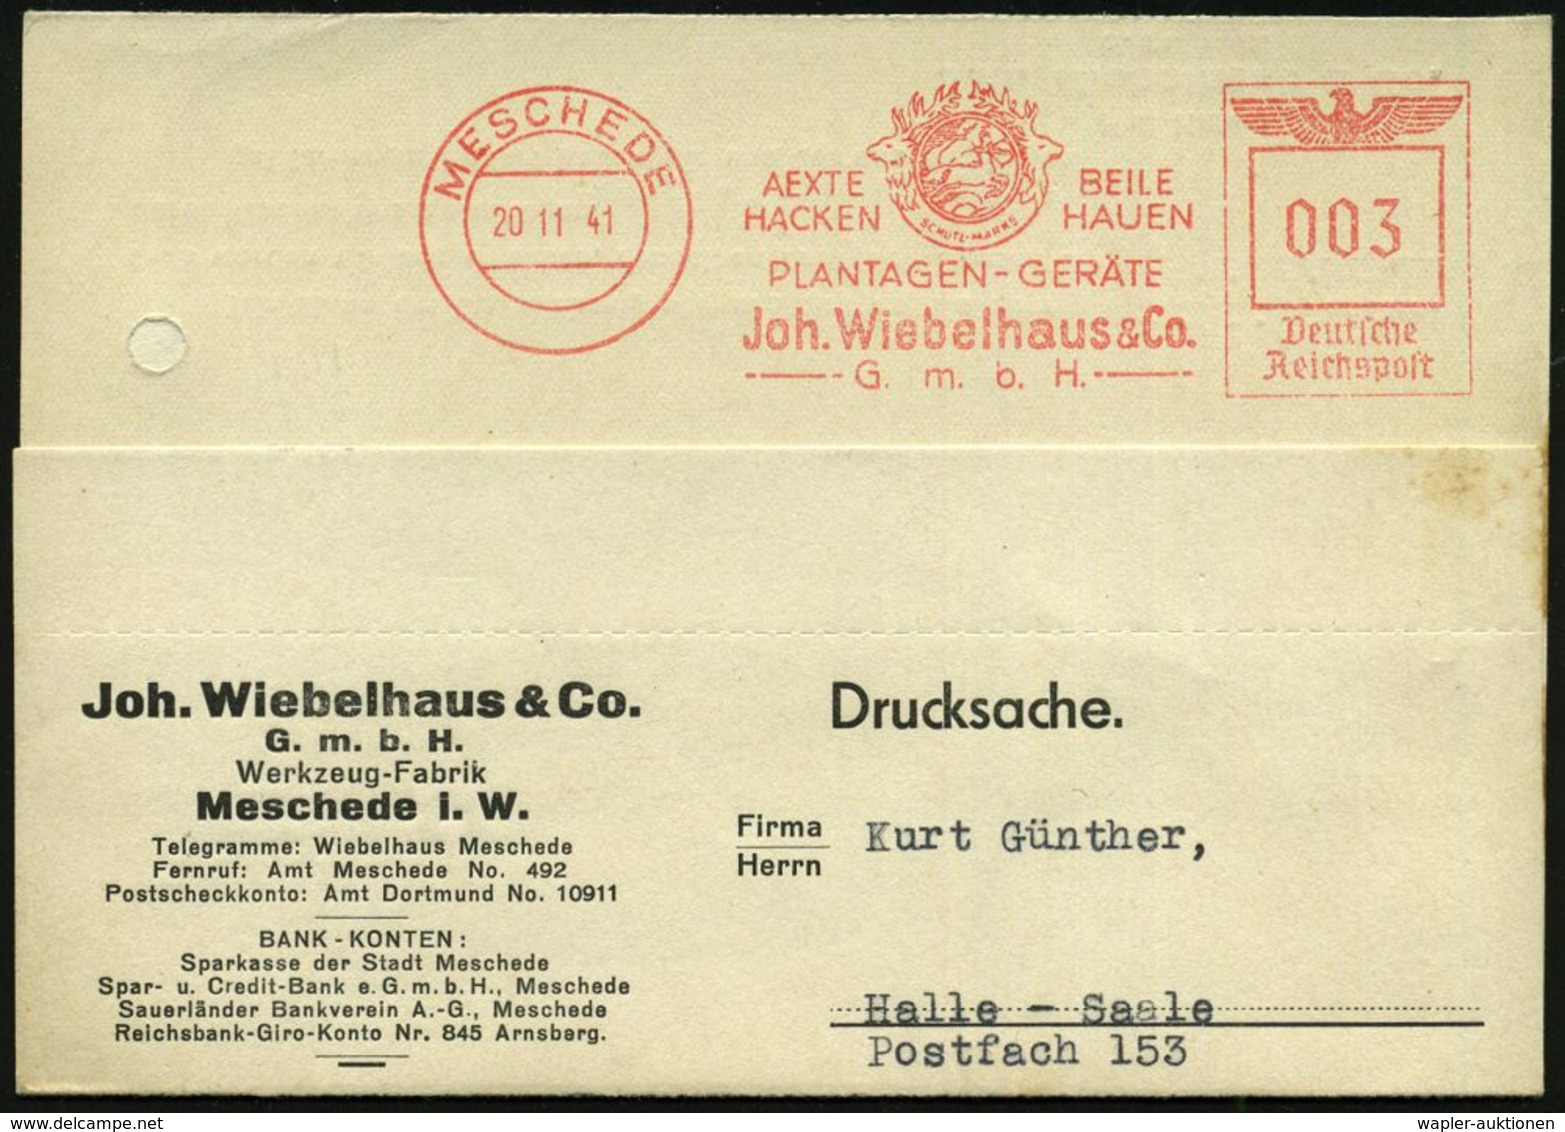 MESCHEDE/ AEXTE../ PLANTAGEN-GERÄTE/ Joh.Wiebelhaus & Co/ GmbH 1941 (20.11.) Seltener AFS = Jagdgöttin Diana-Artemis Als - Tir (Armes)